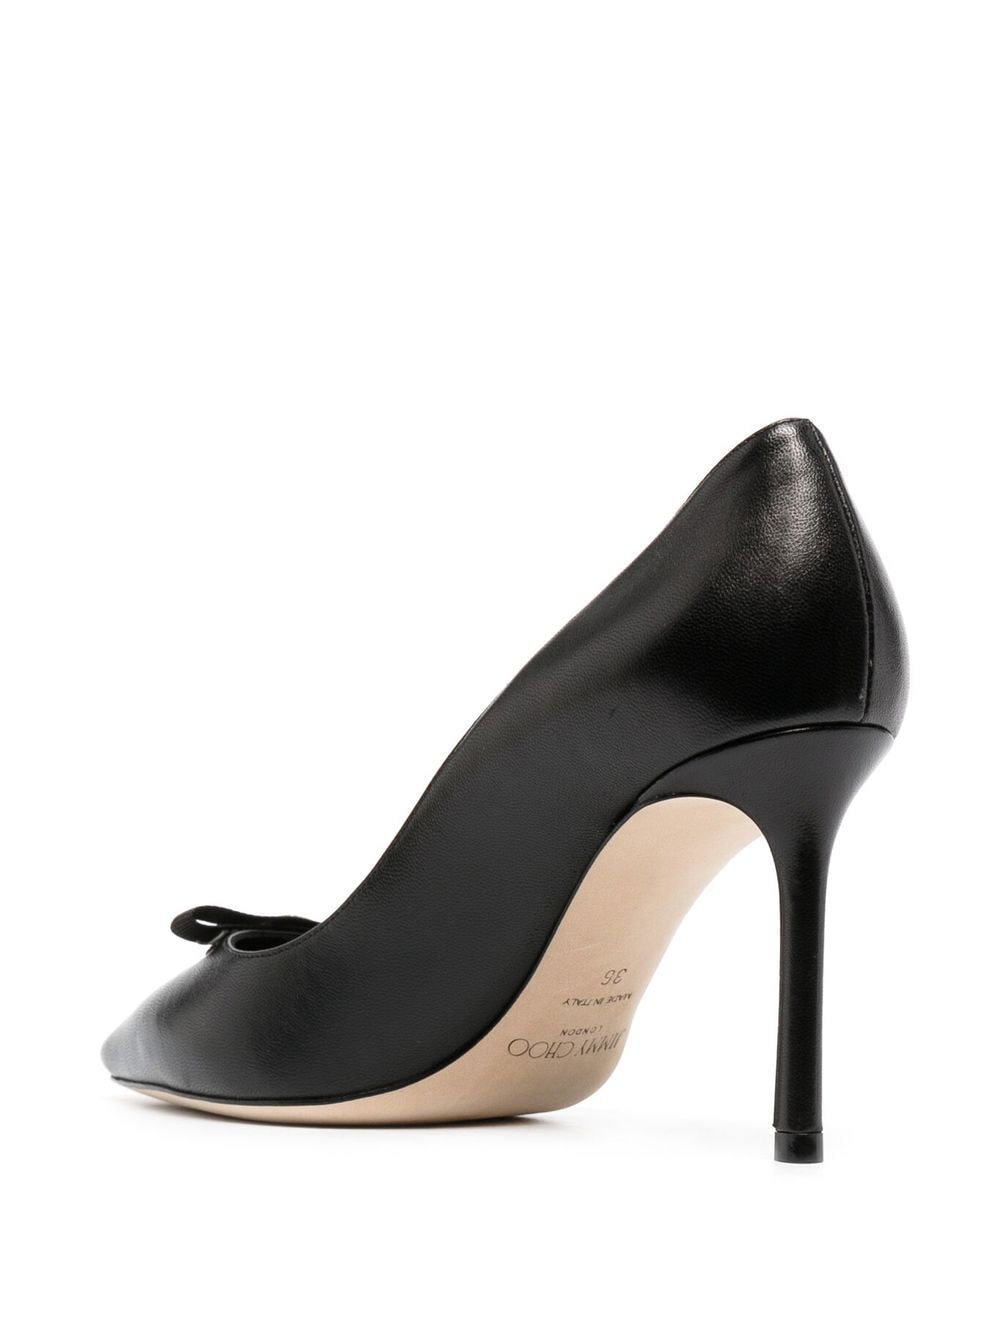 Giày cao gót da đen tinh tế cho phụ nữ - Romy 85mm cho mùa xuân hè 24